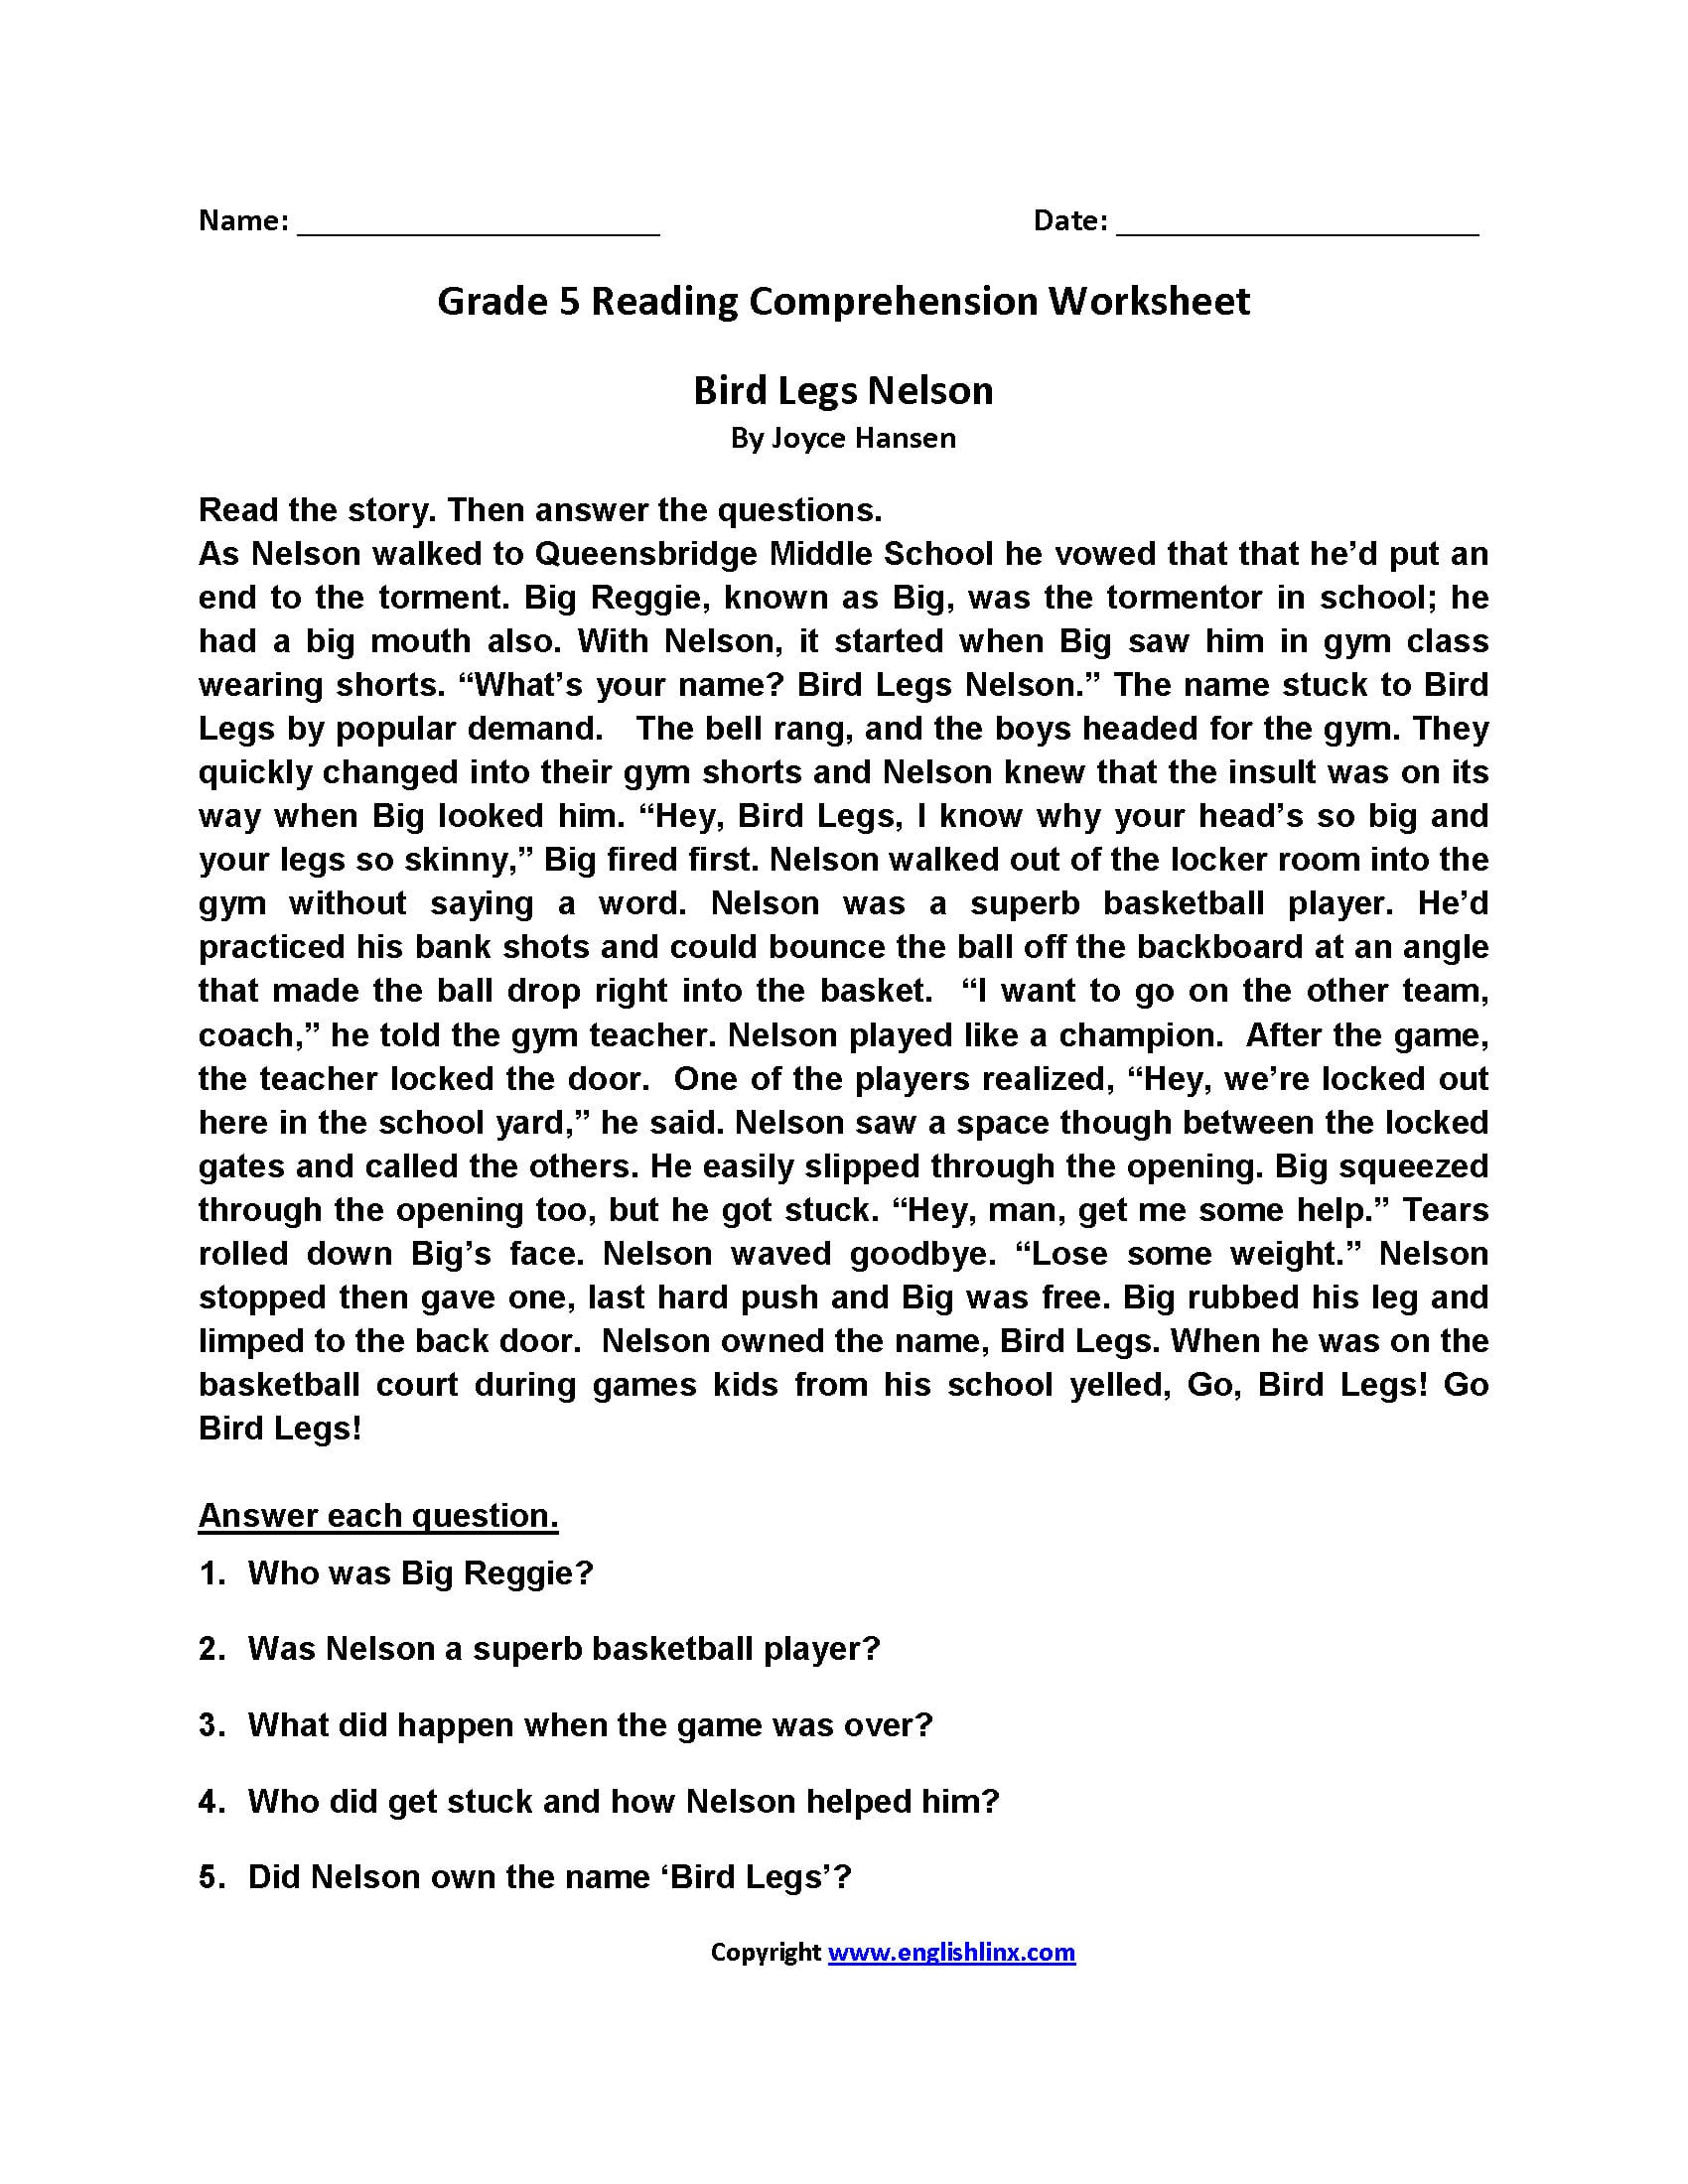 comprehension-worksheet-for-grade-5-favorite-workshee-vrogue-co